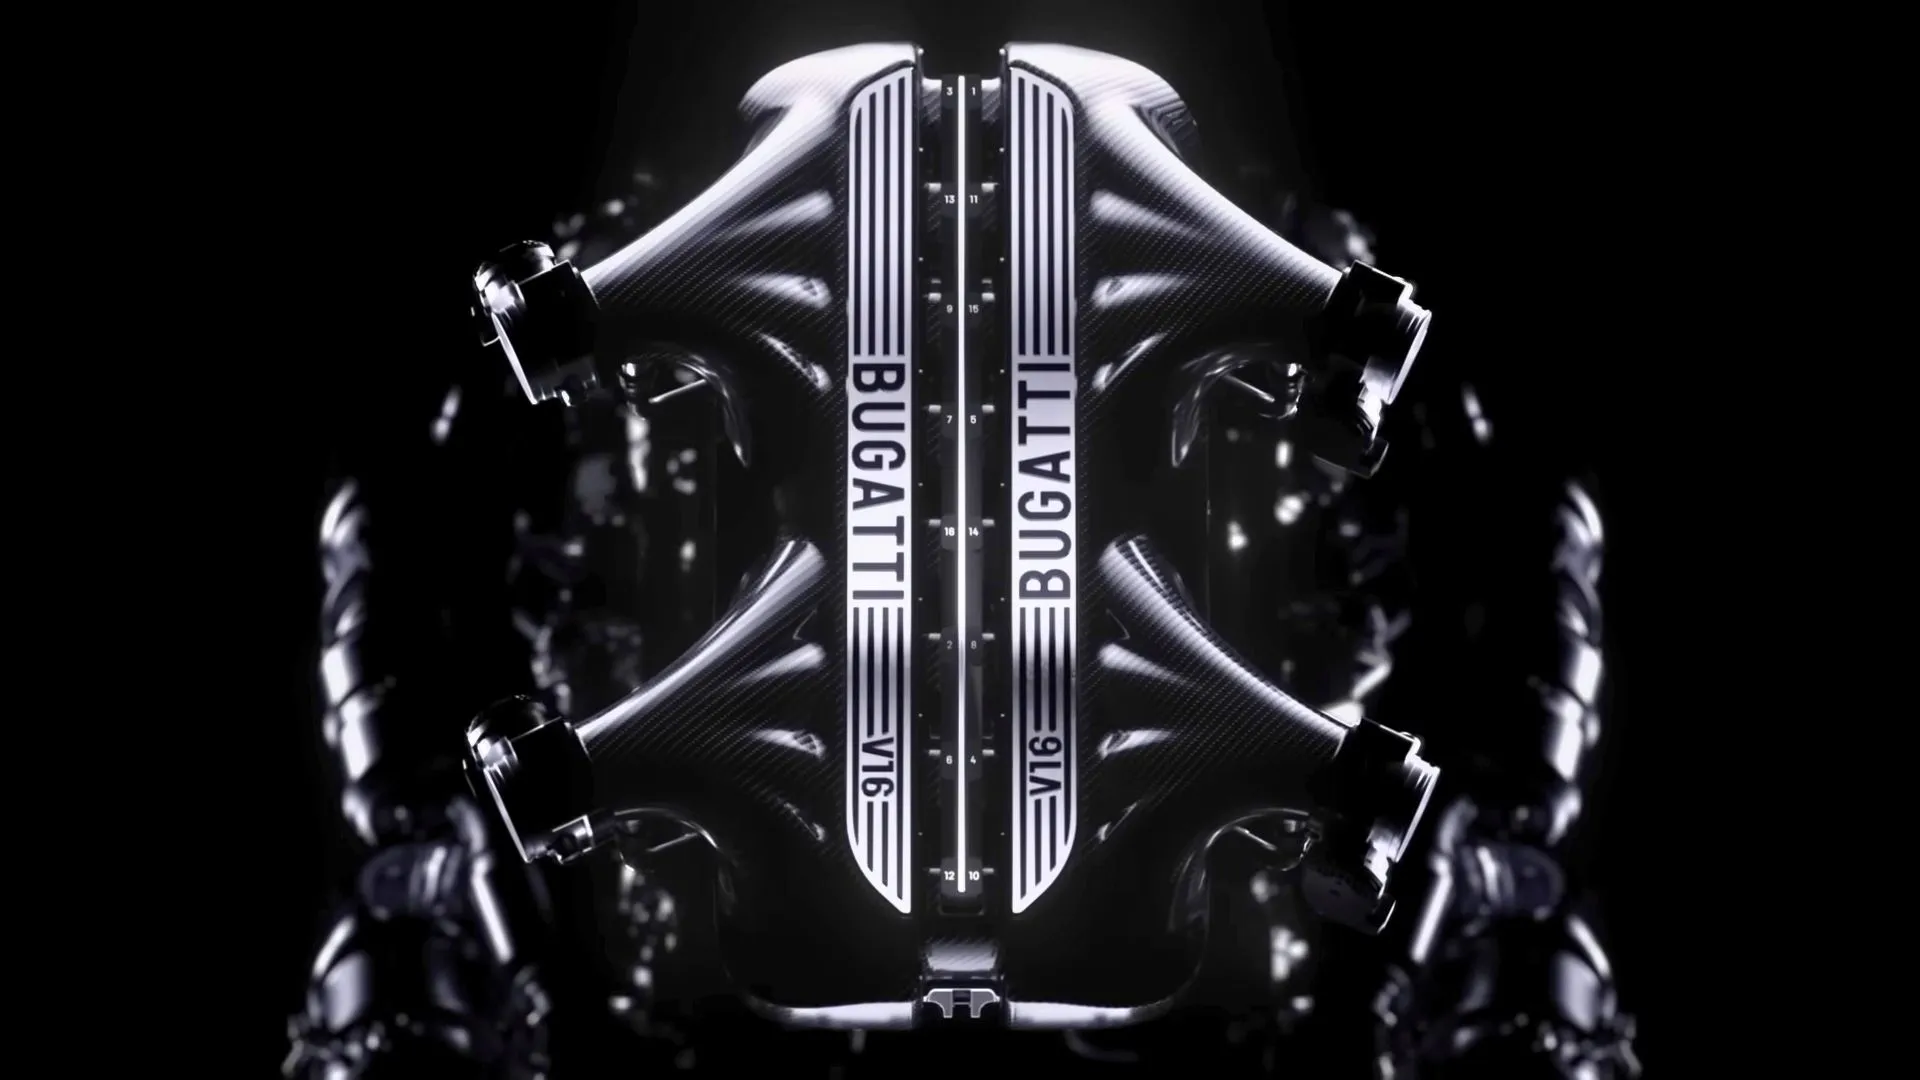 Bugatti har annonsert en ny V16-hybridmotor som gjør at bilen kan nå hastigheter på opptil 445 km/t